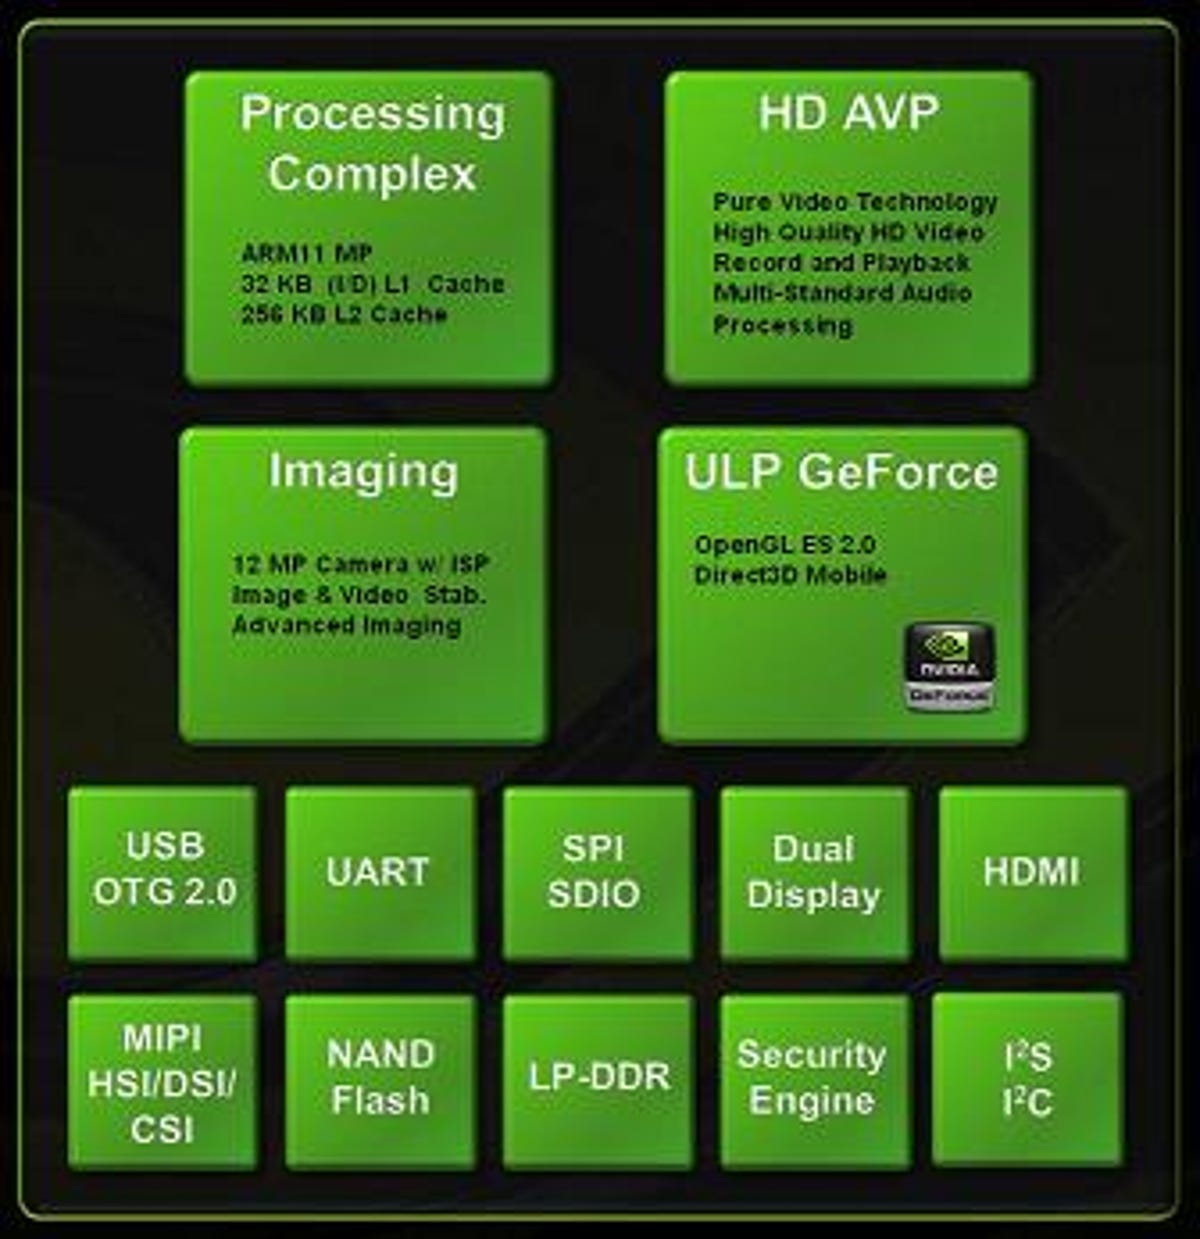 Nvidia APX 2500 block diagram